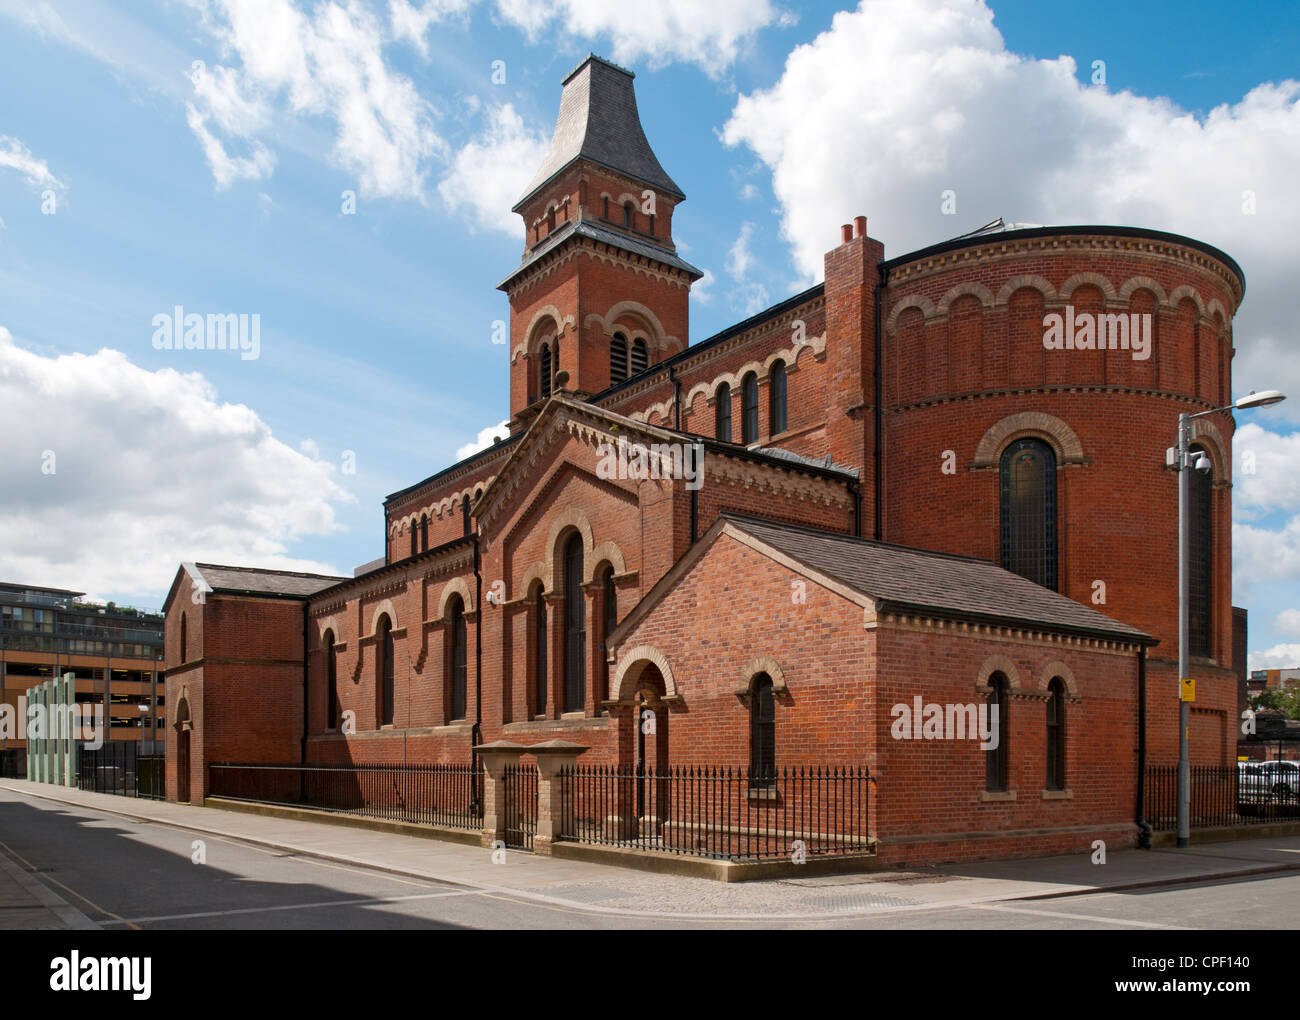 L'ex chiesa restaurata di San Pietro, Ancoats, Northern Quarter, Manchester, Inghilterra, Regno Unito. Ora una sala prove per l'orchestra Halle. Foto Stock